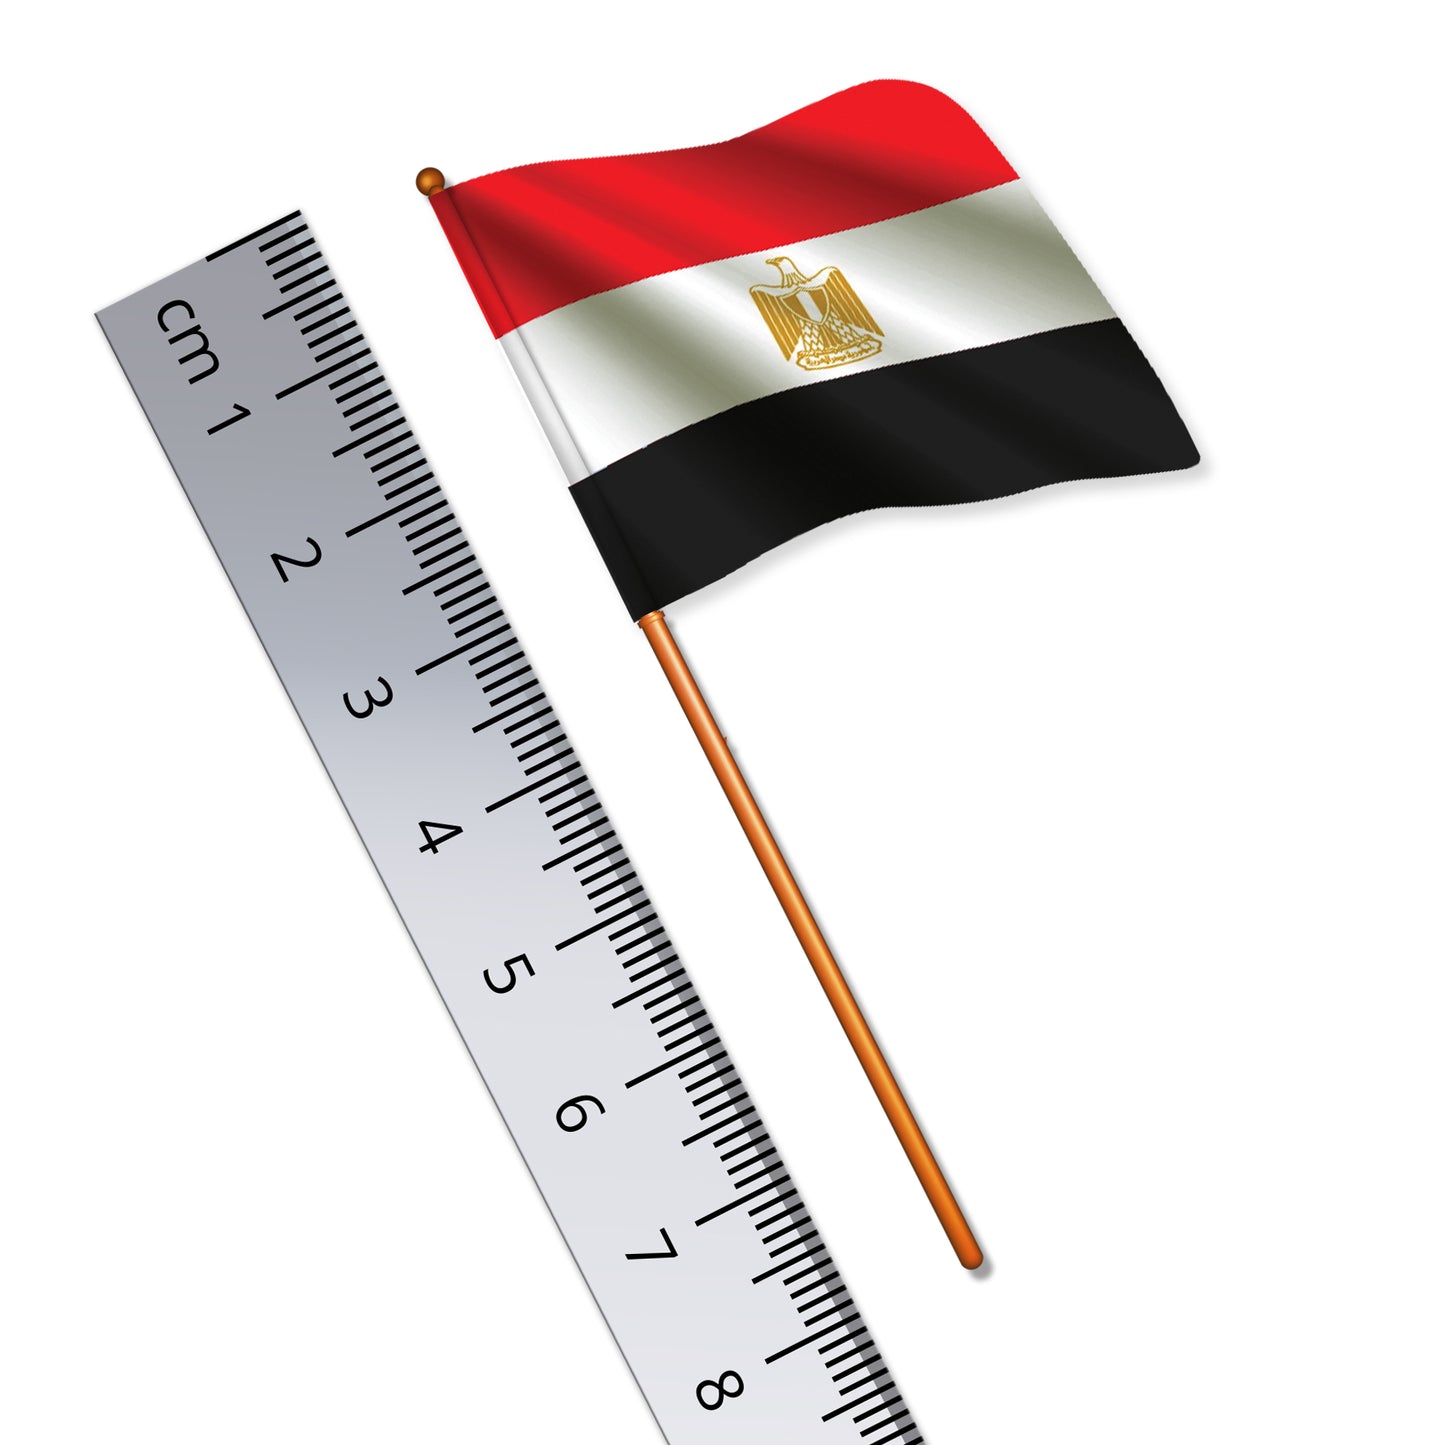 Egyptian Flag (National Flag of Egypt)